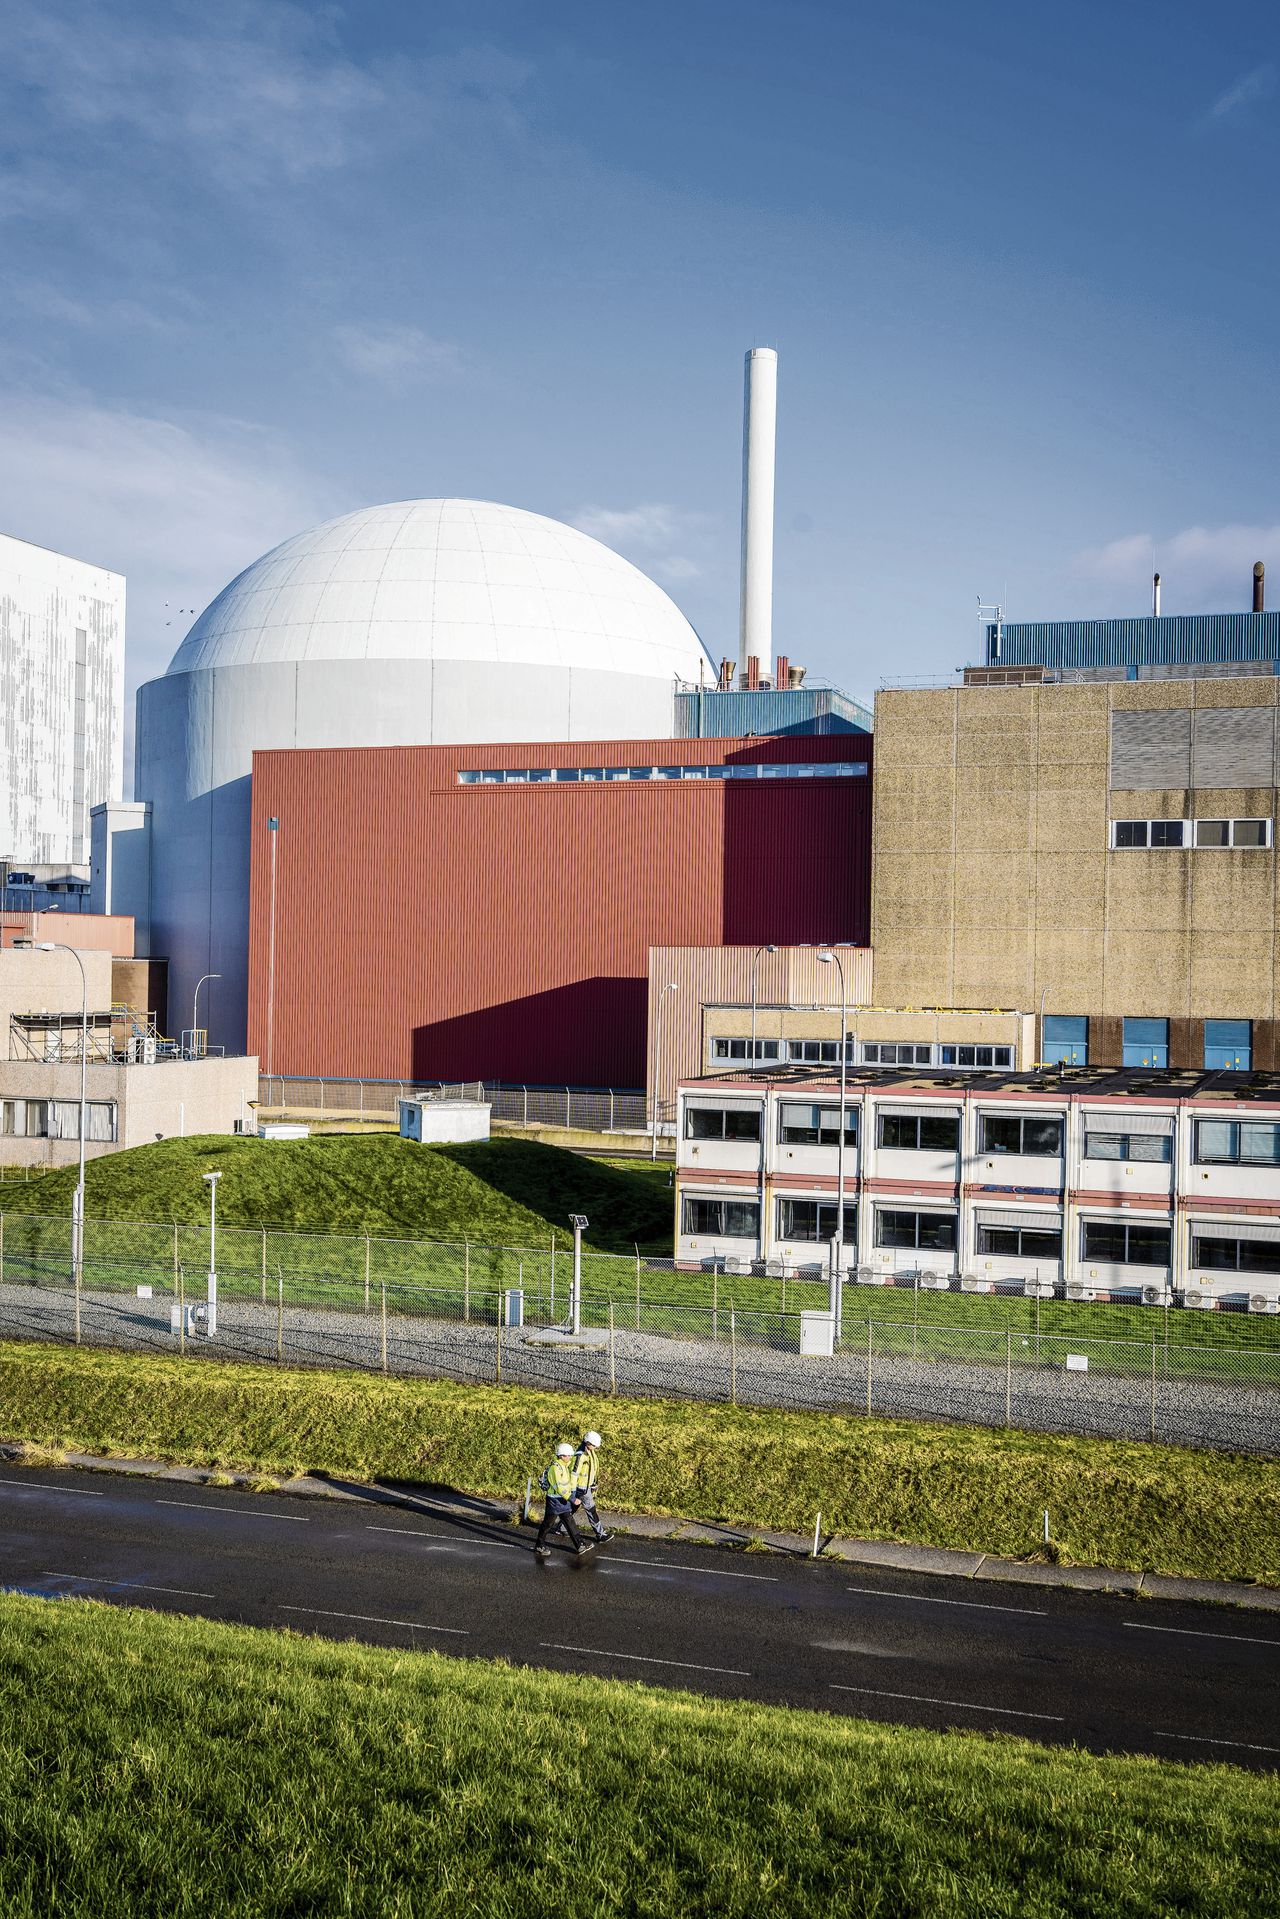 Minister beslist in najaar over locatie twee nieuwe kerncentrales 